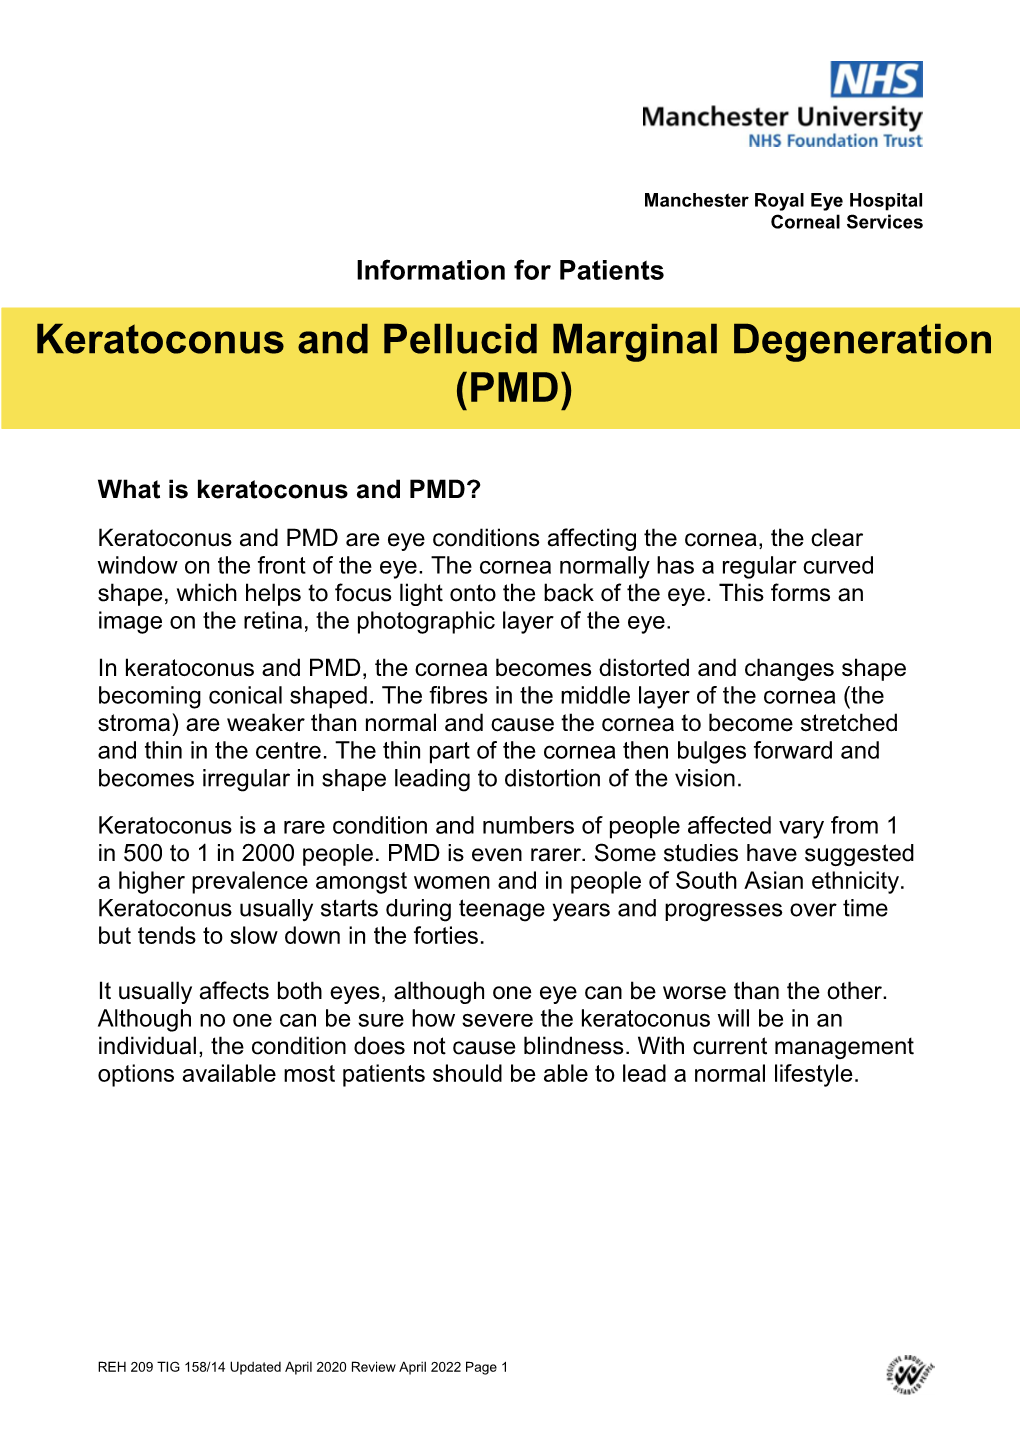 Keratoconus and Pellucid Marginal Degeneration (PMD)